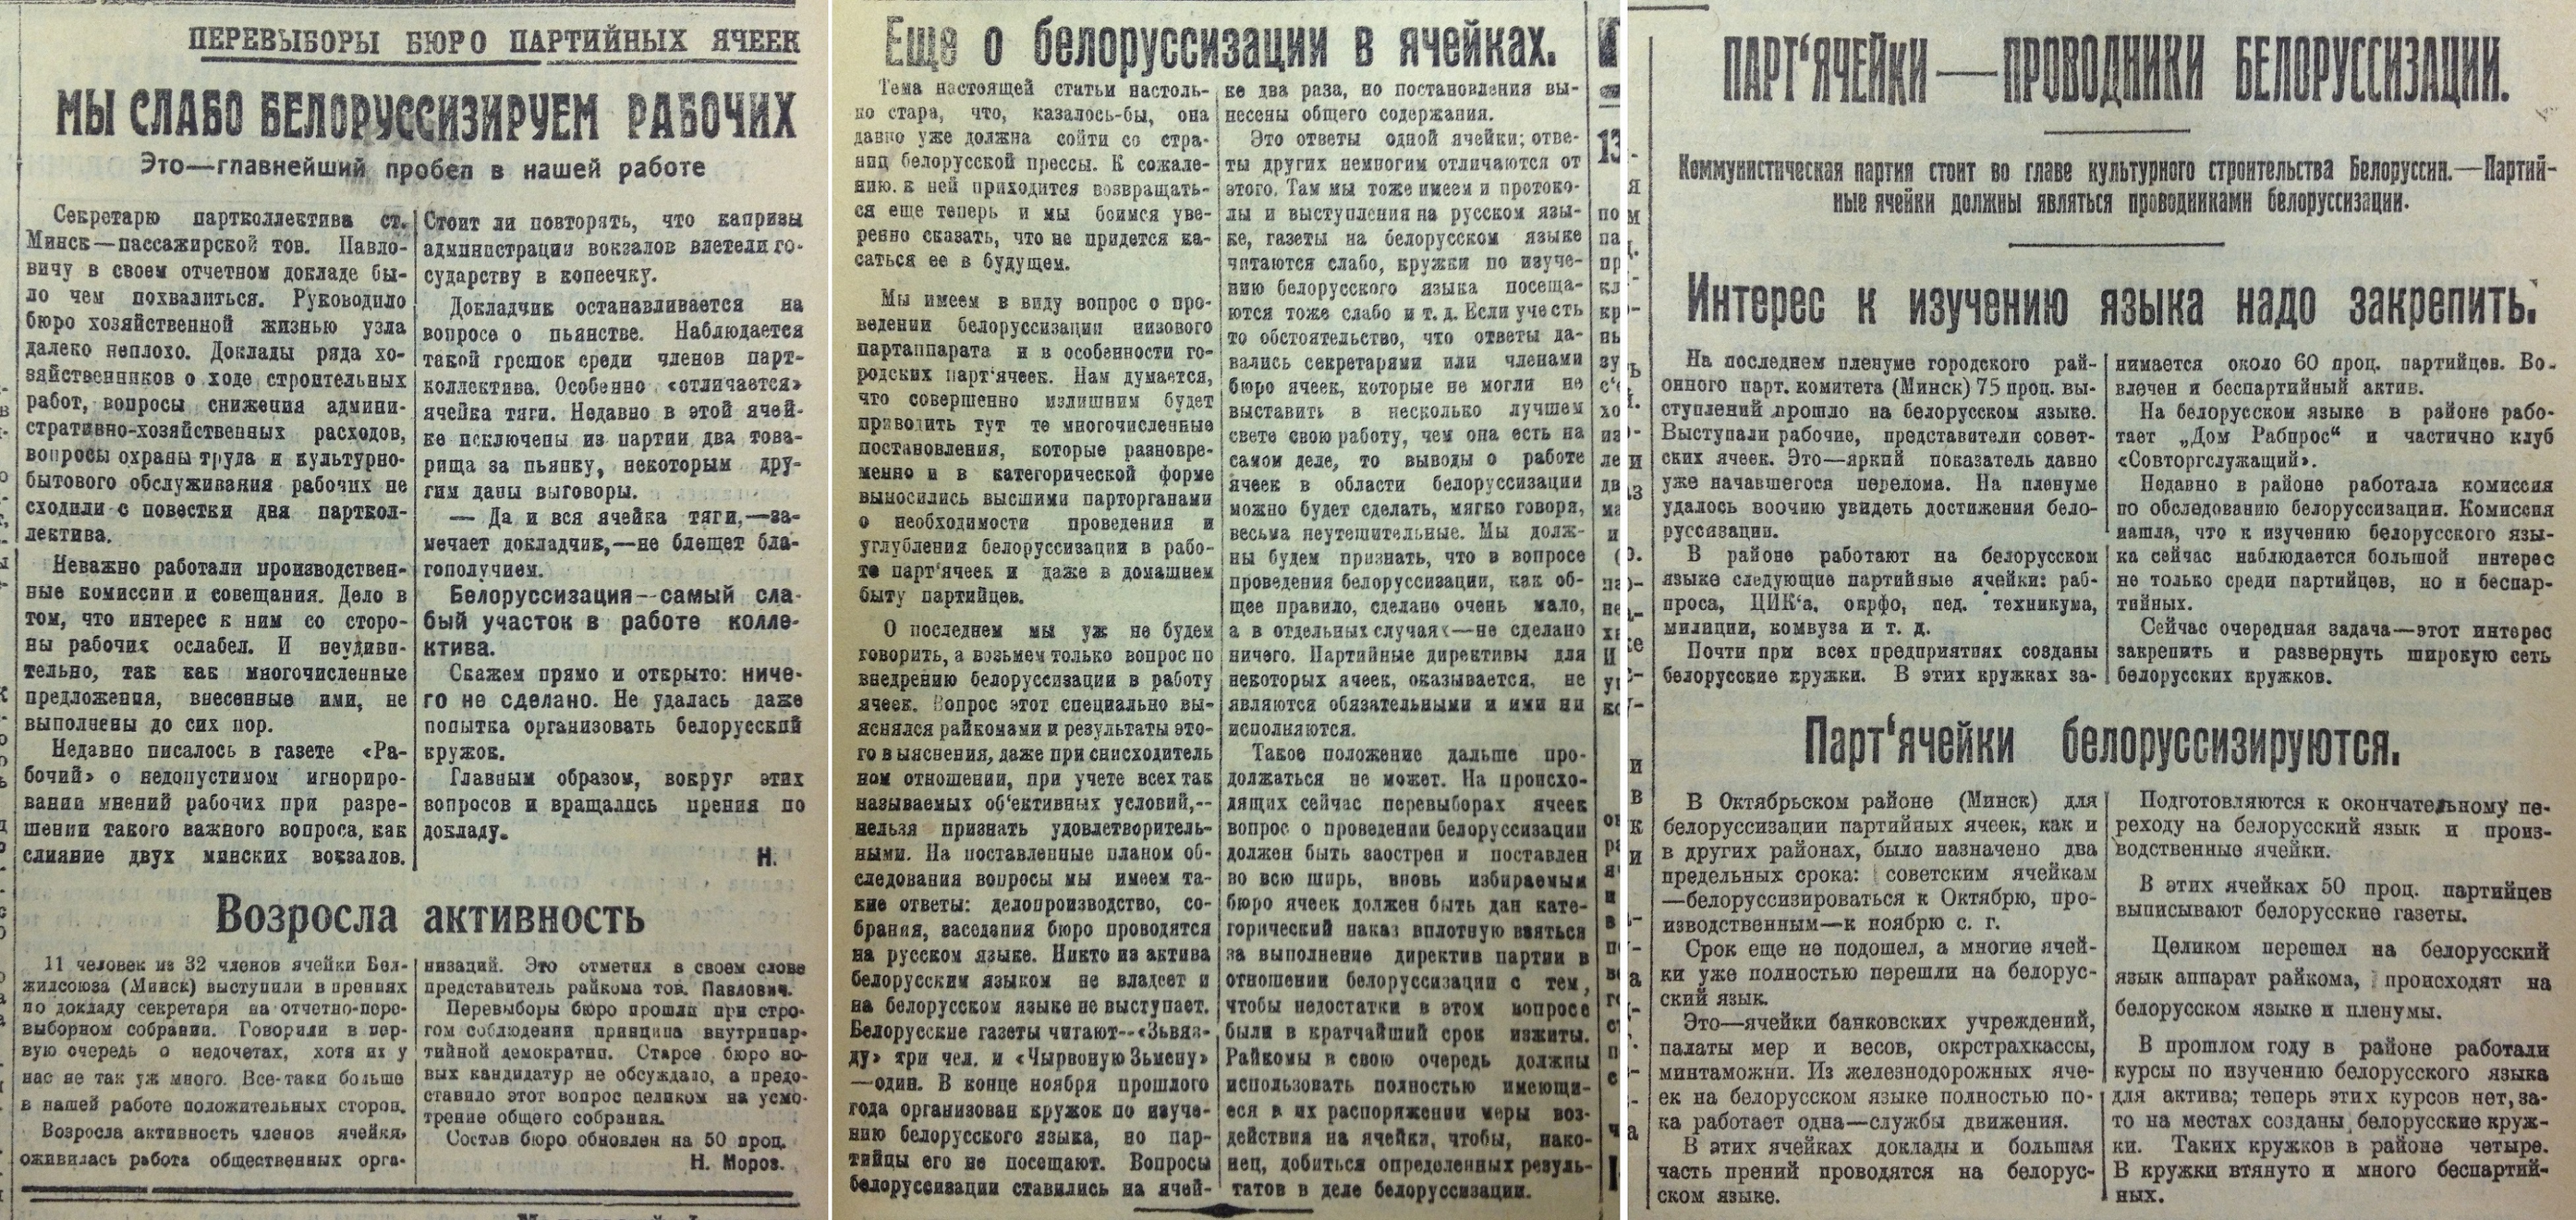 Газета на белорусском языке